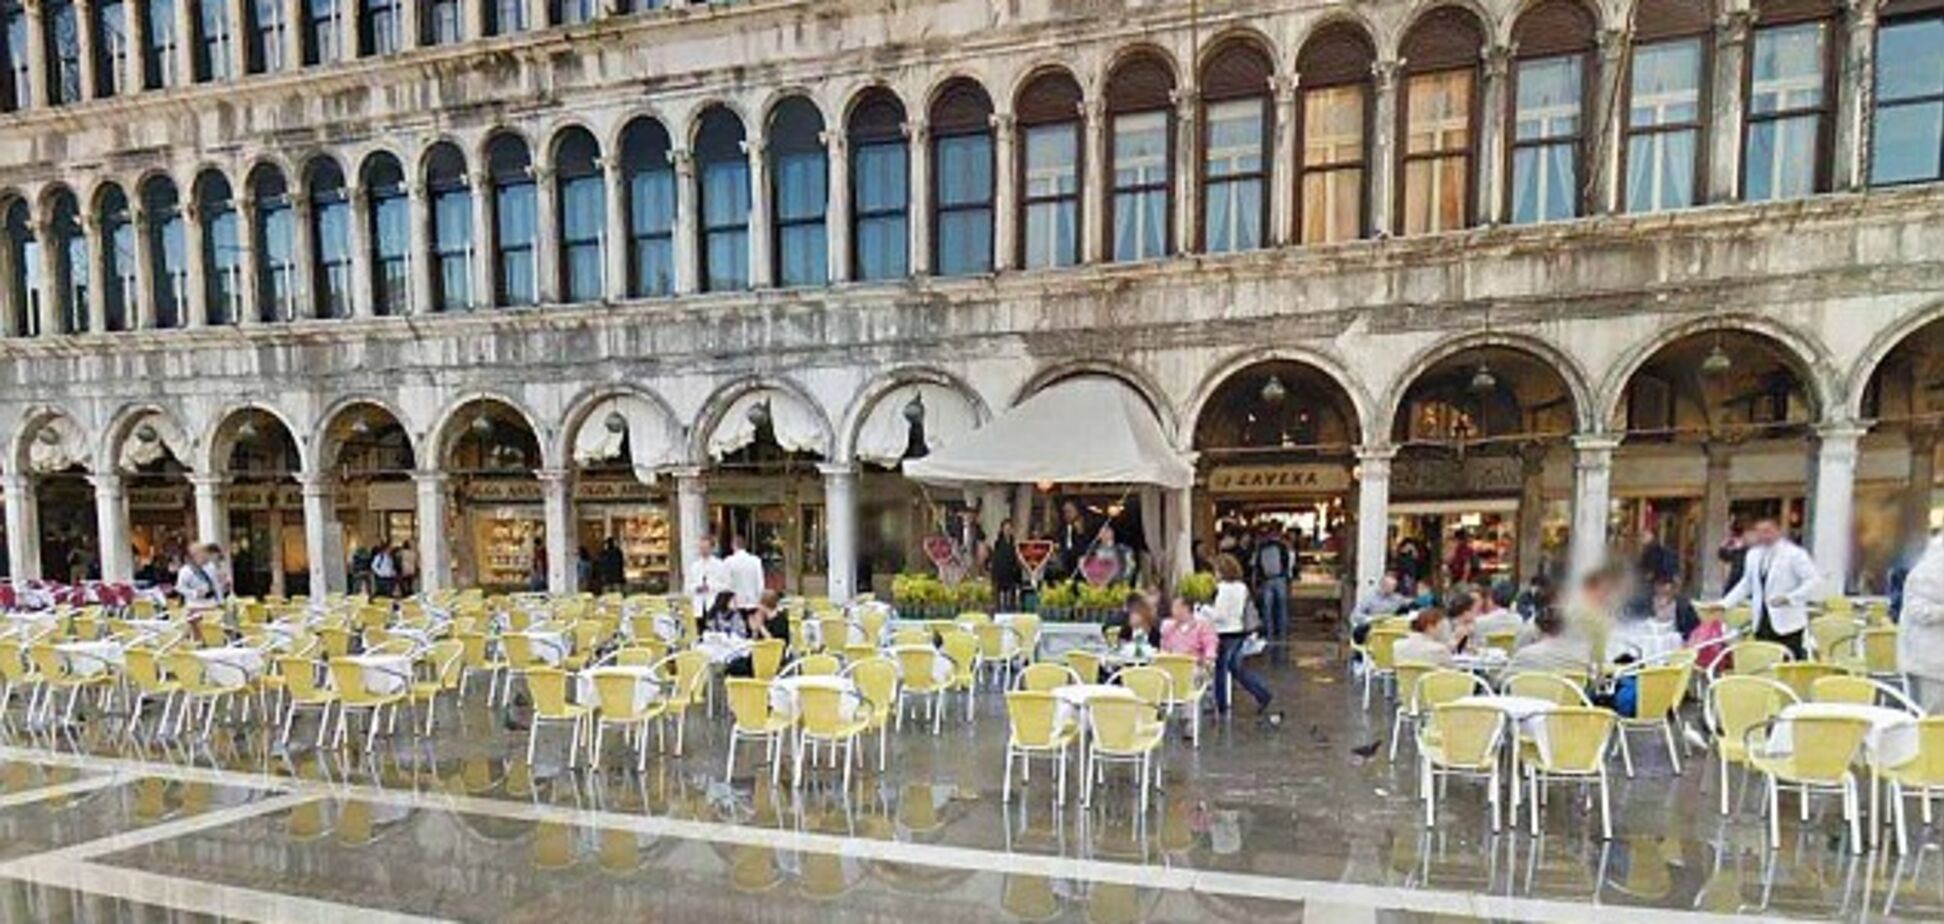 За музыку и красивый вид: в Венеции разгорелся скандал с туристом из-за 'двойных цен' в кафе